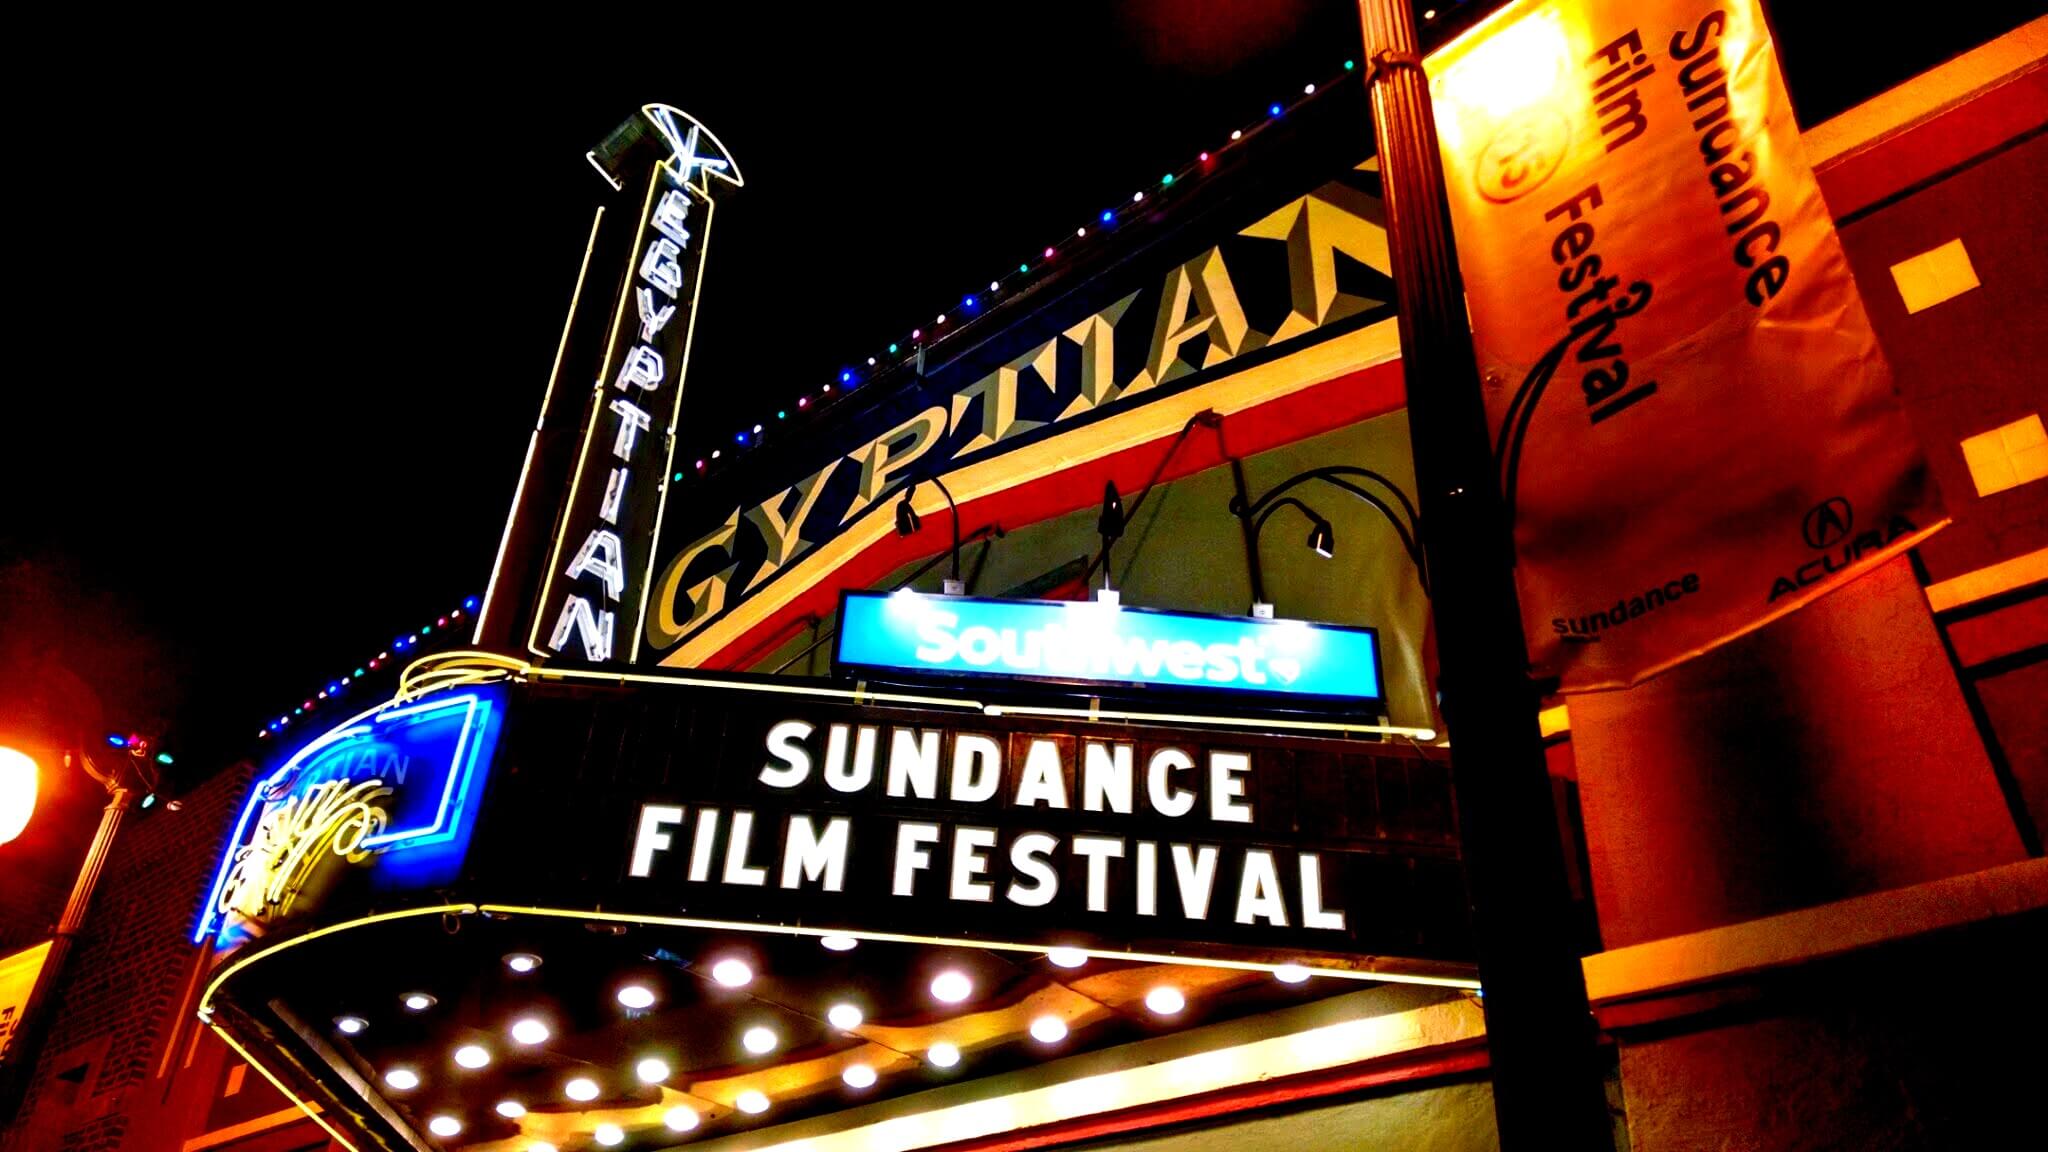 https://www.namava.ir/mag/wp-content/uploads/2020/02/Sundance_Film_Festival.jpg